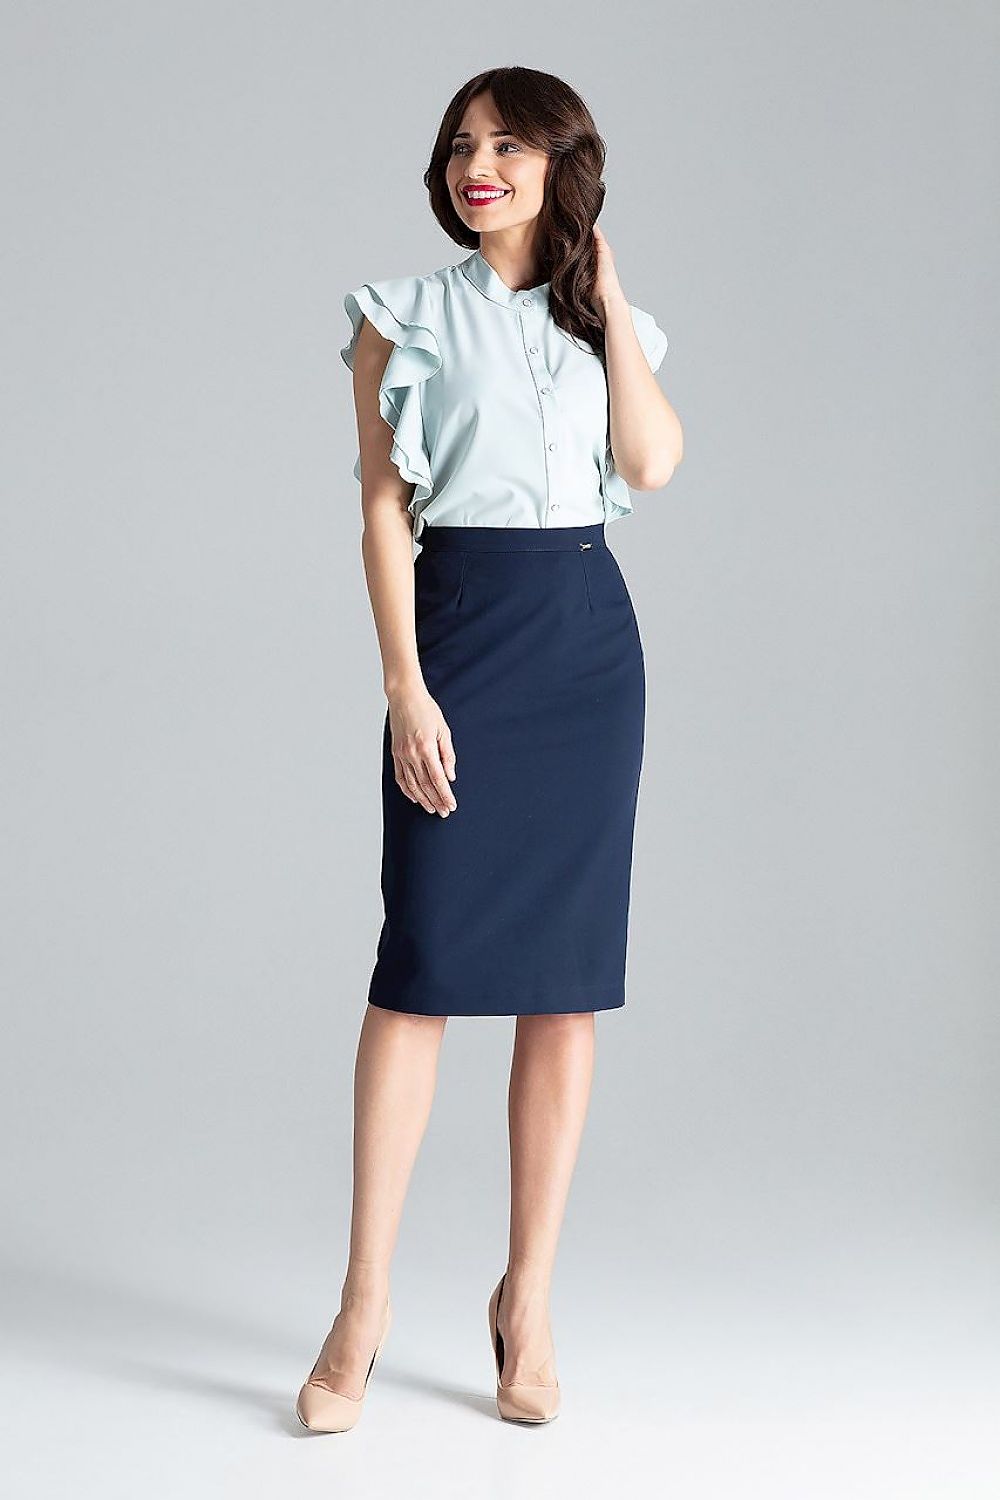 Classic Skirt Model 130967 Lenitif